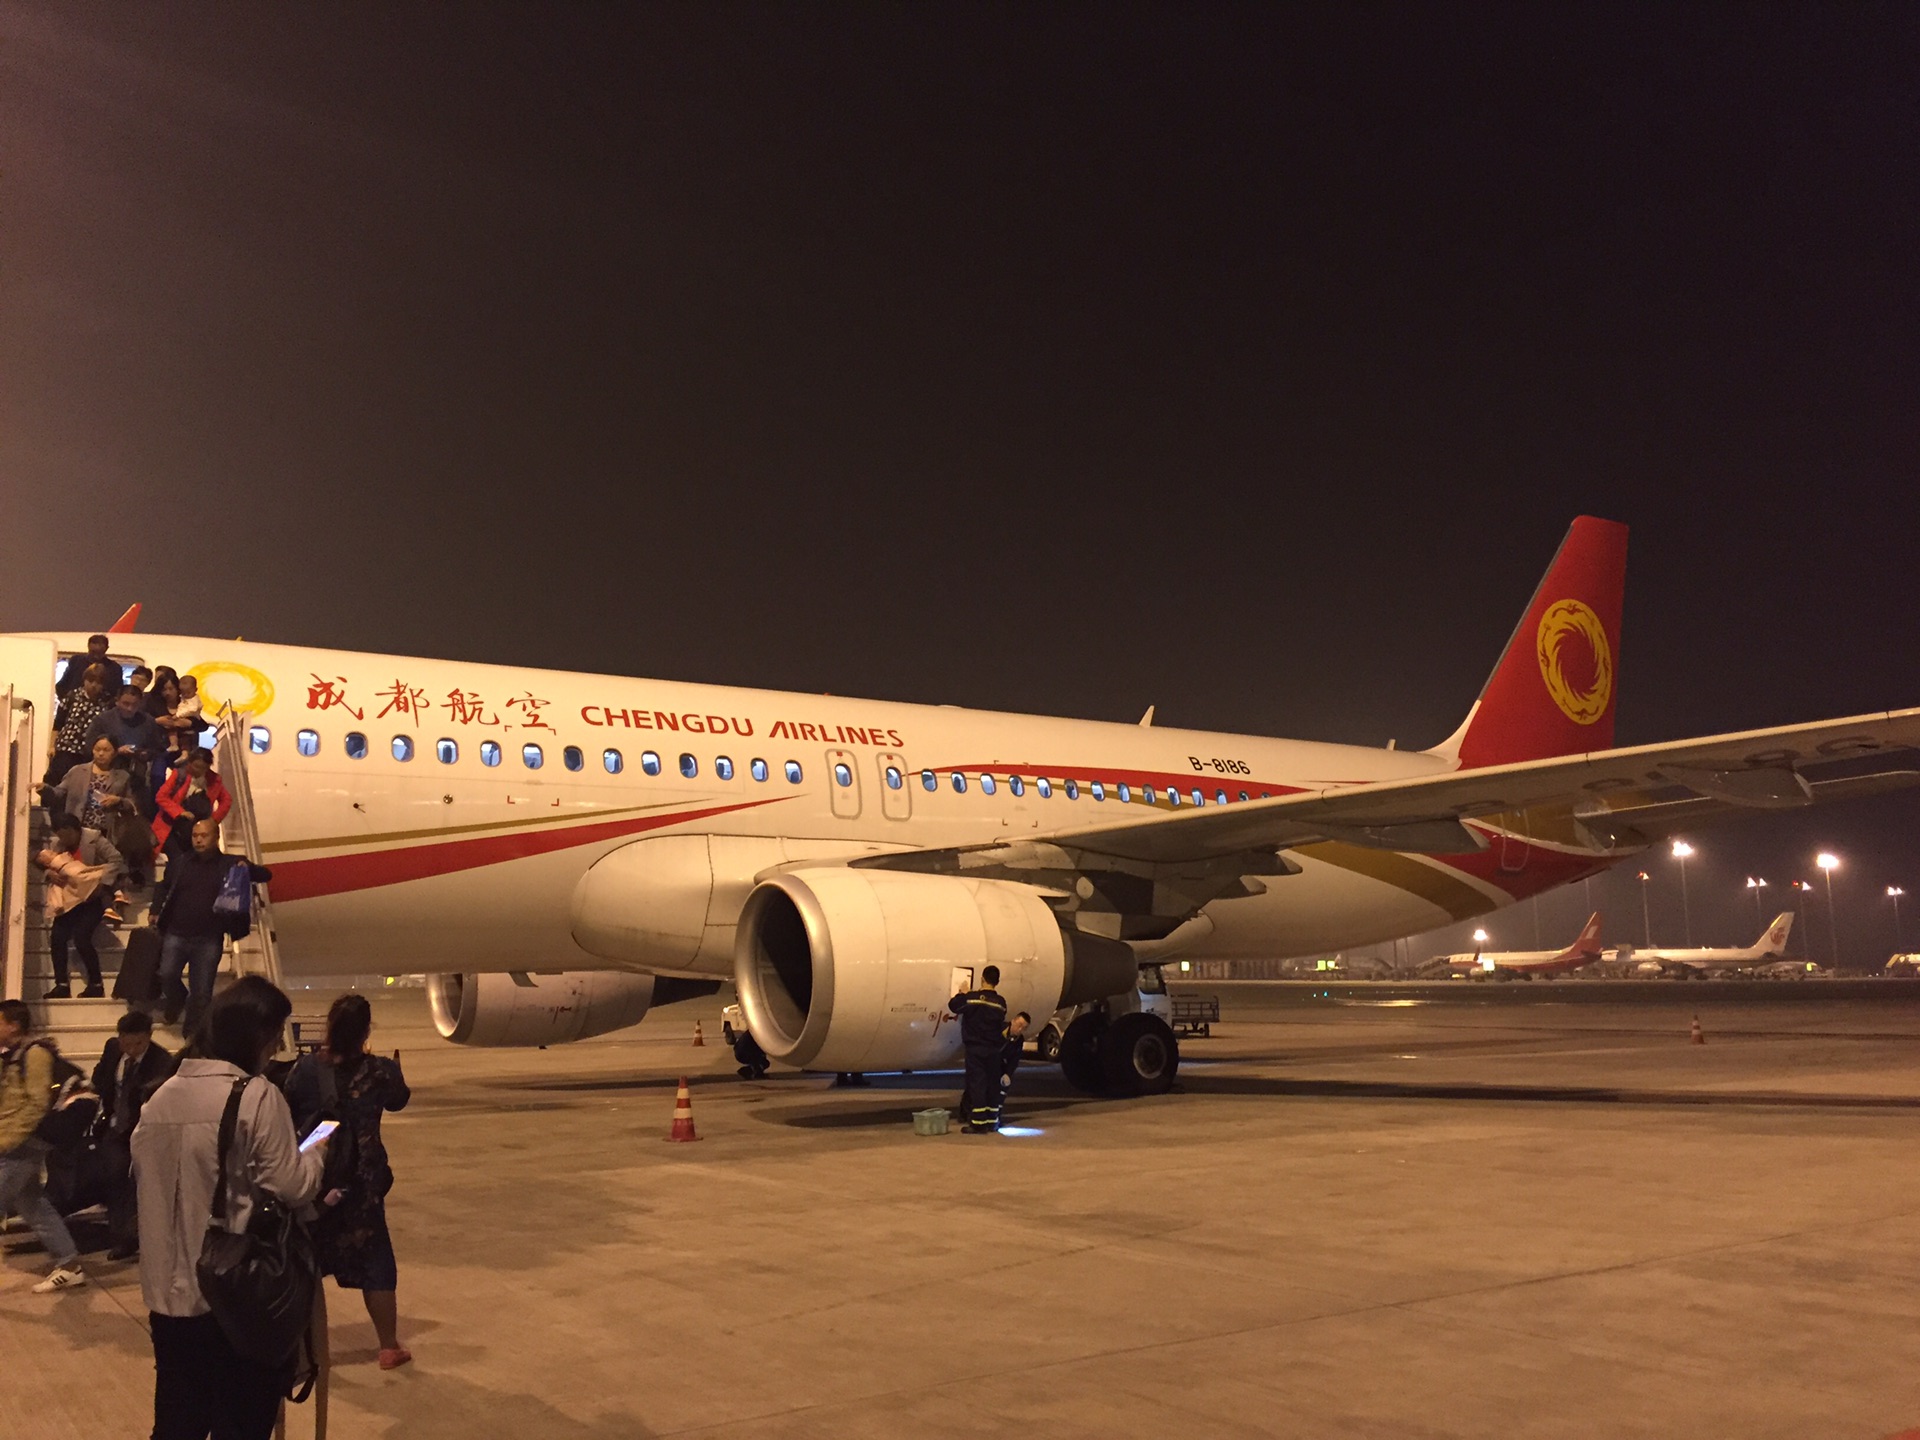 我们选择的是第一天晚上郑州到成都的飞机,夜里机票比白天便宜是